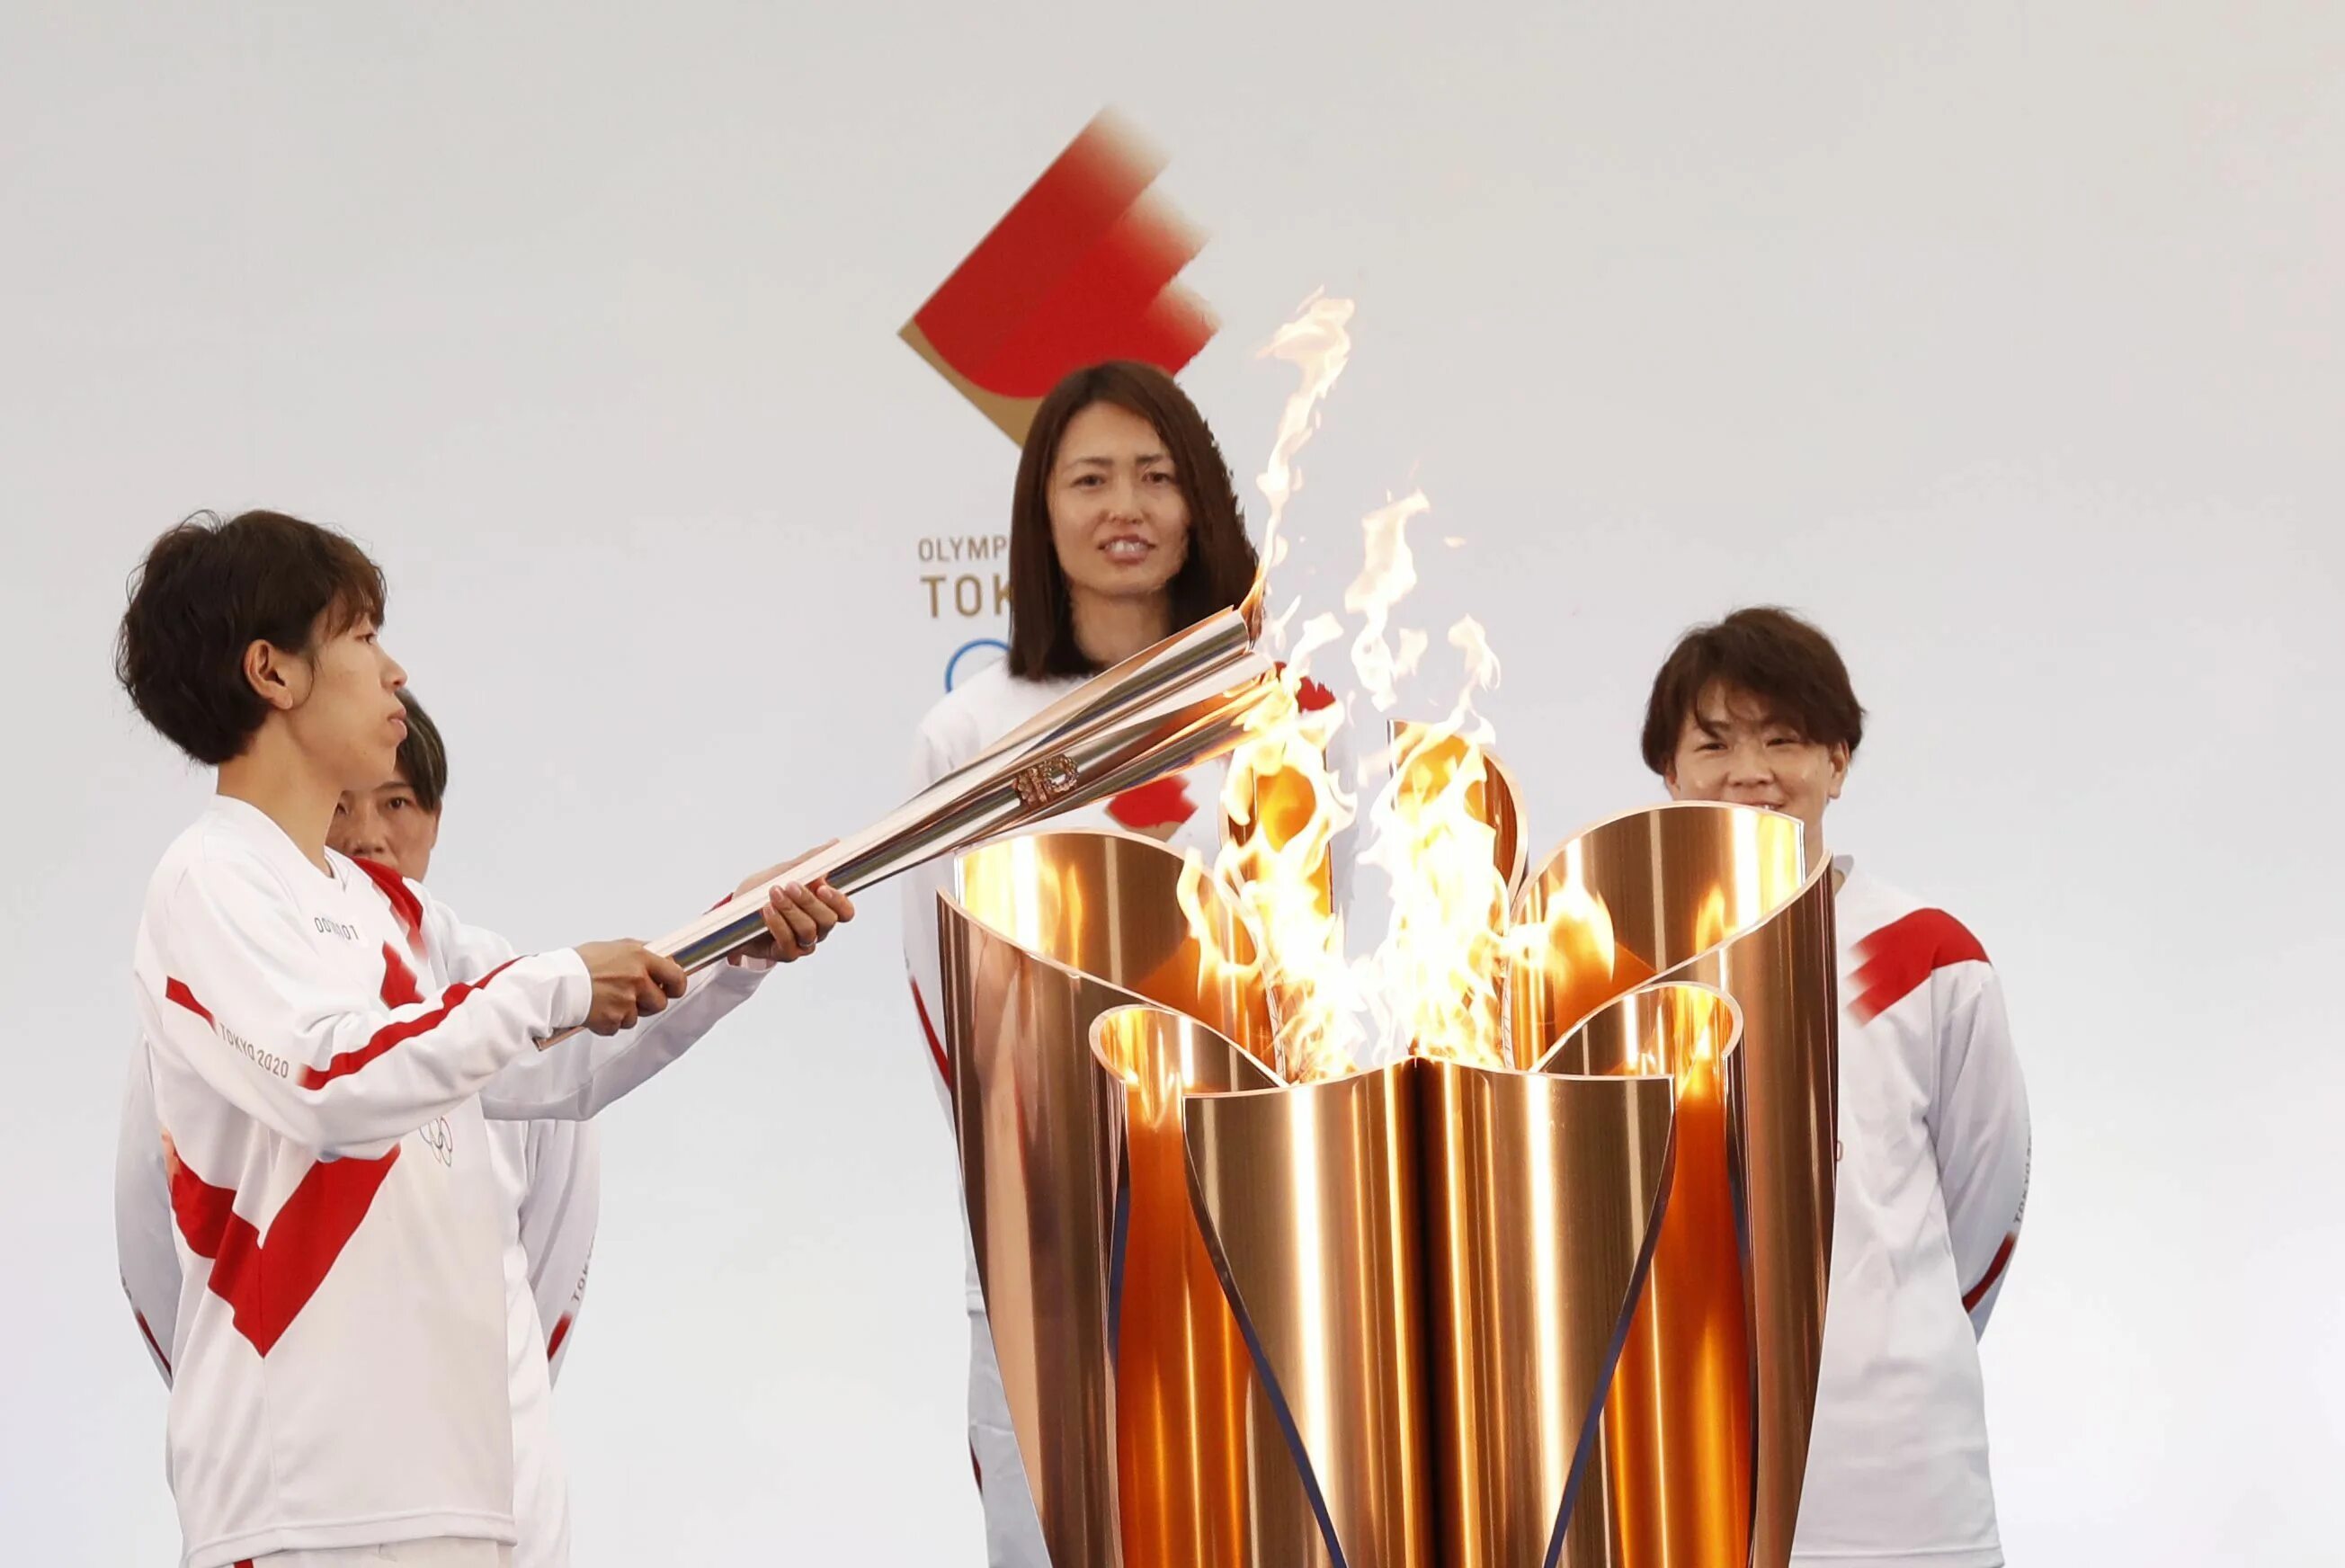 Tokyo olympics. Олимпийский огонь Токио 2020. Олимпийские игры в Токио 2021. Олимпийский огонь в Токио 2021. Олимпийский факел Токио 2021.